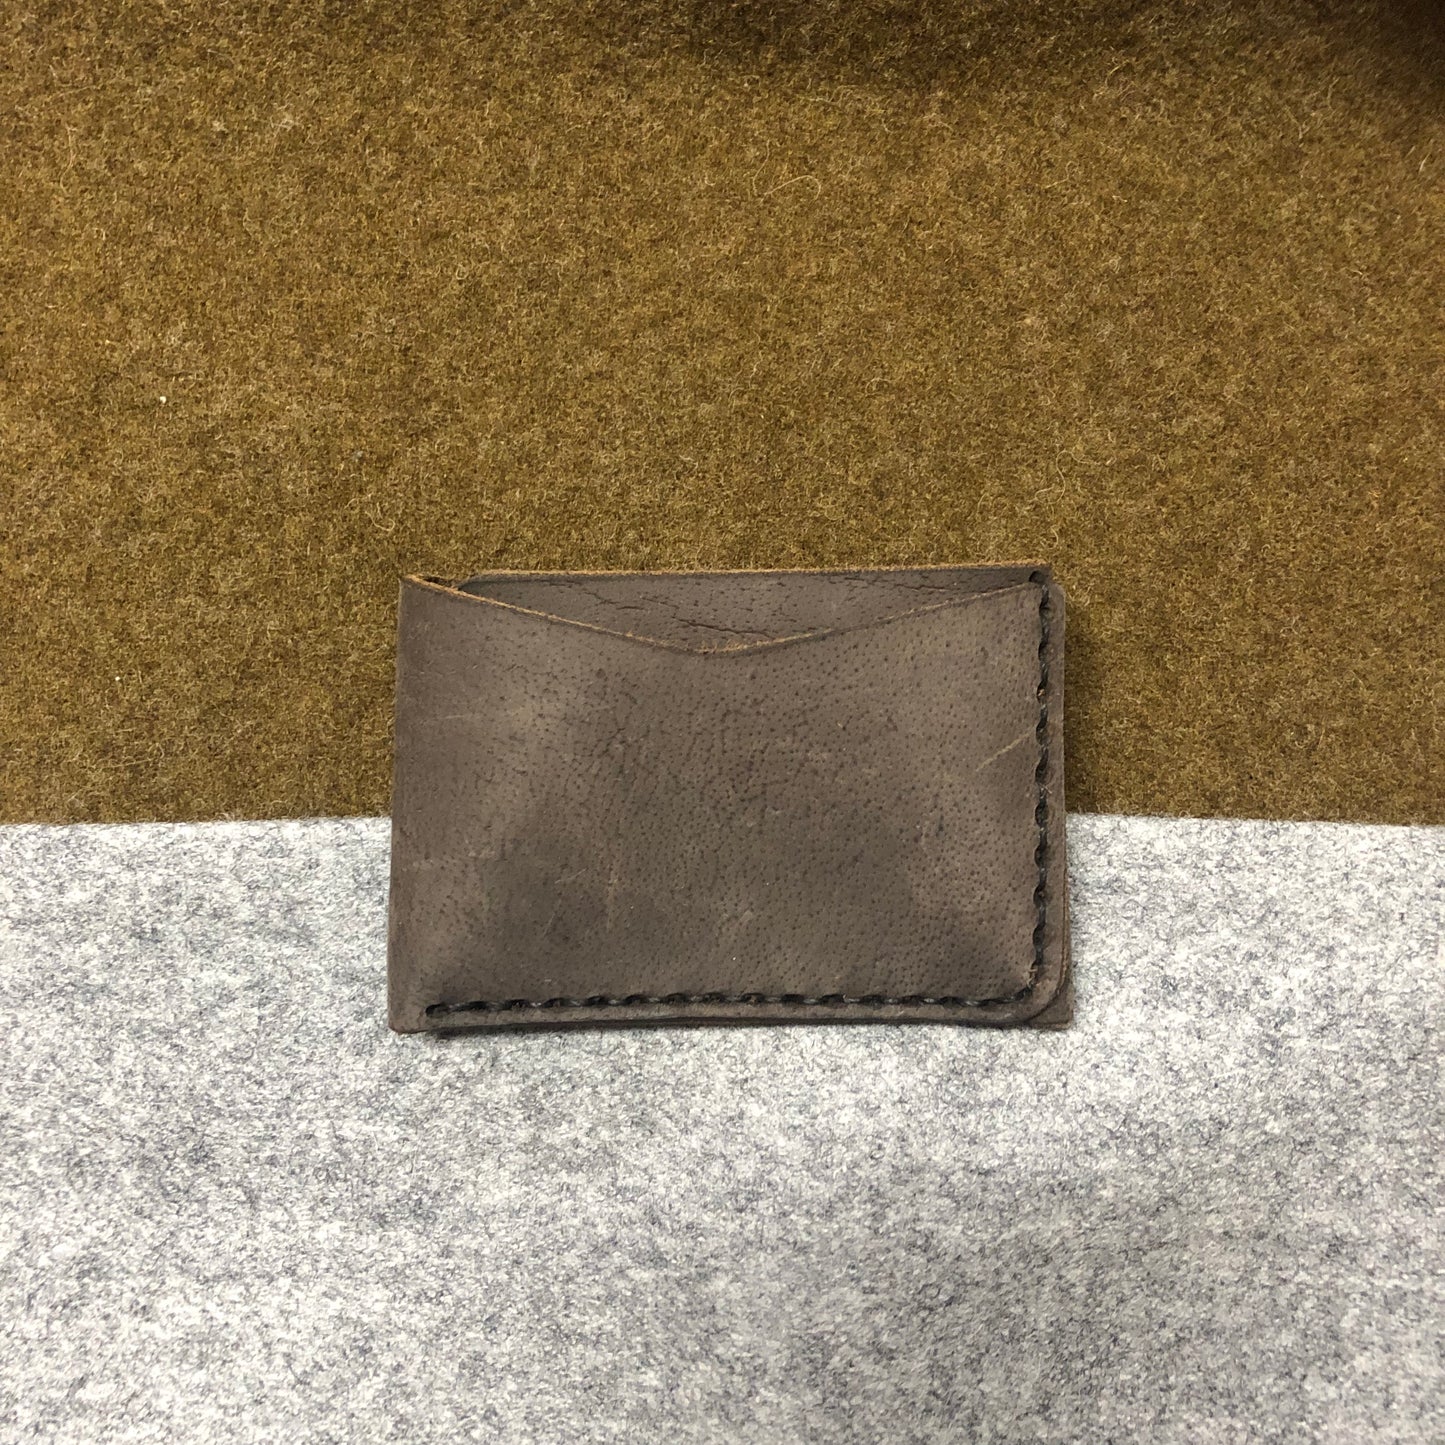 
                  
                    Slimmer Leather Wallet
                  
                